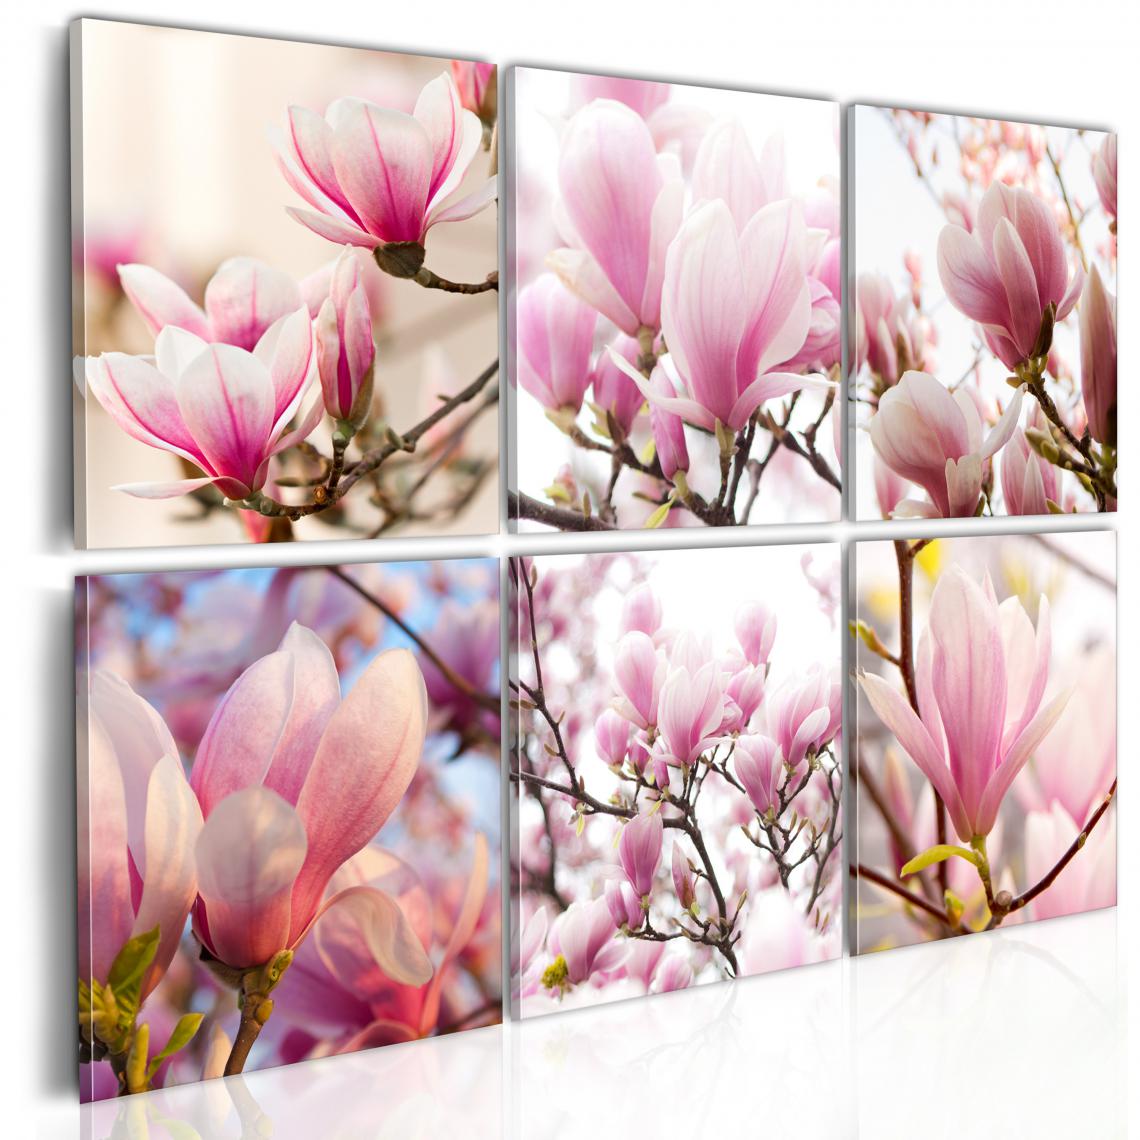 Decoshop26 - Tableau sur toile en 6 panneaux décoration murale image imprimée cadre en bois à suspendre Magnolias dans le Sud 120x80 cm 11_0005417 - Tableaux, peintures